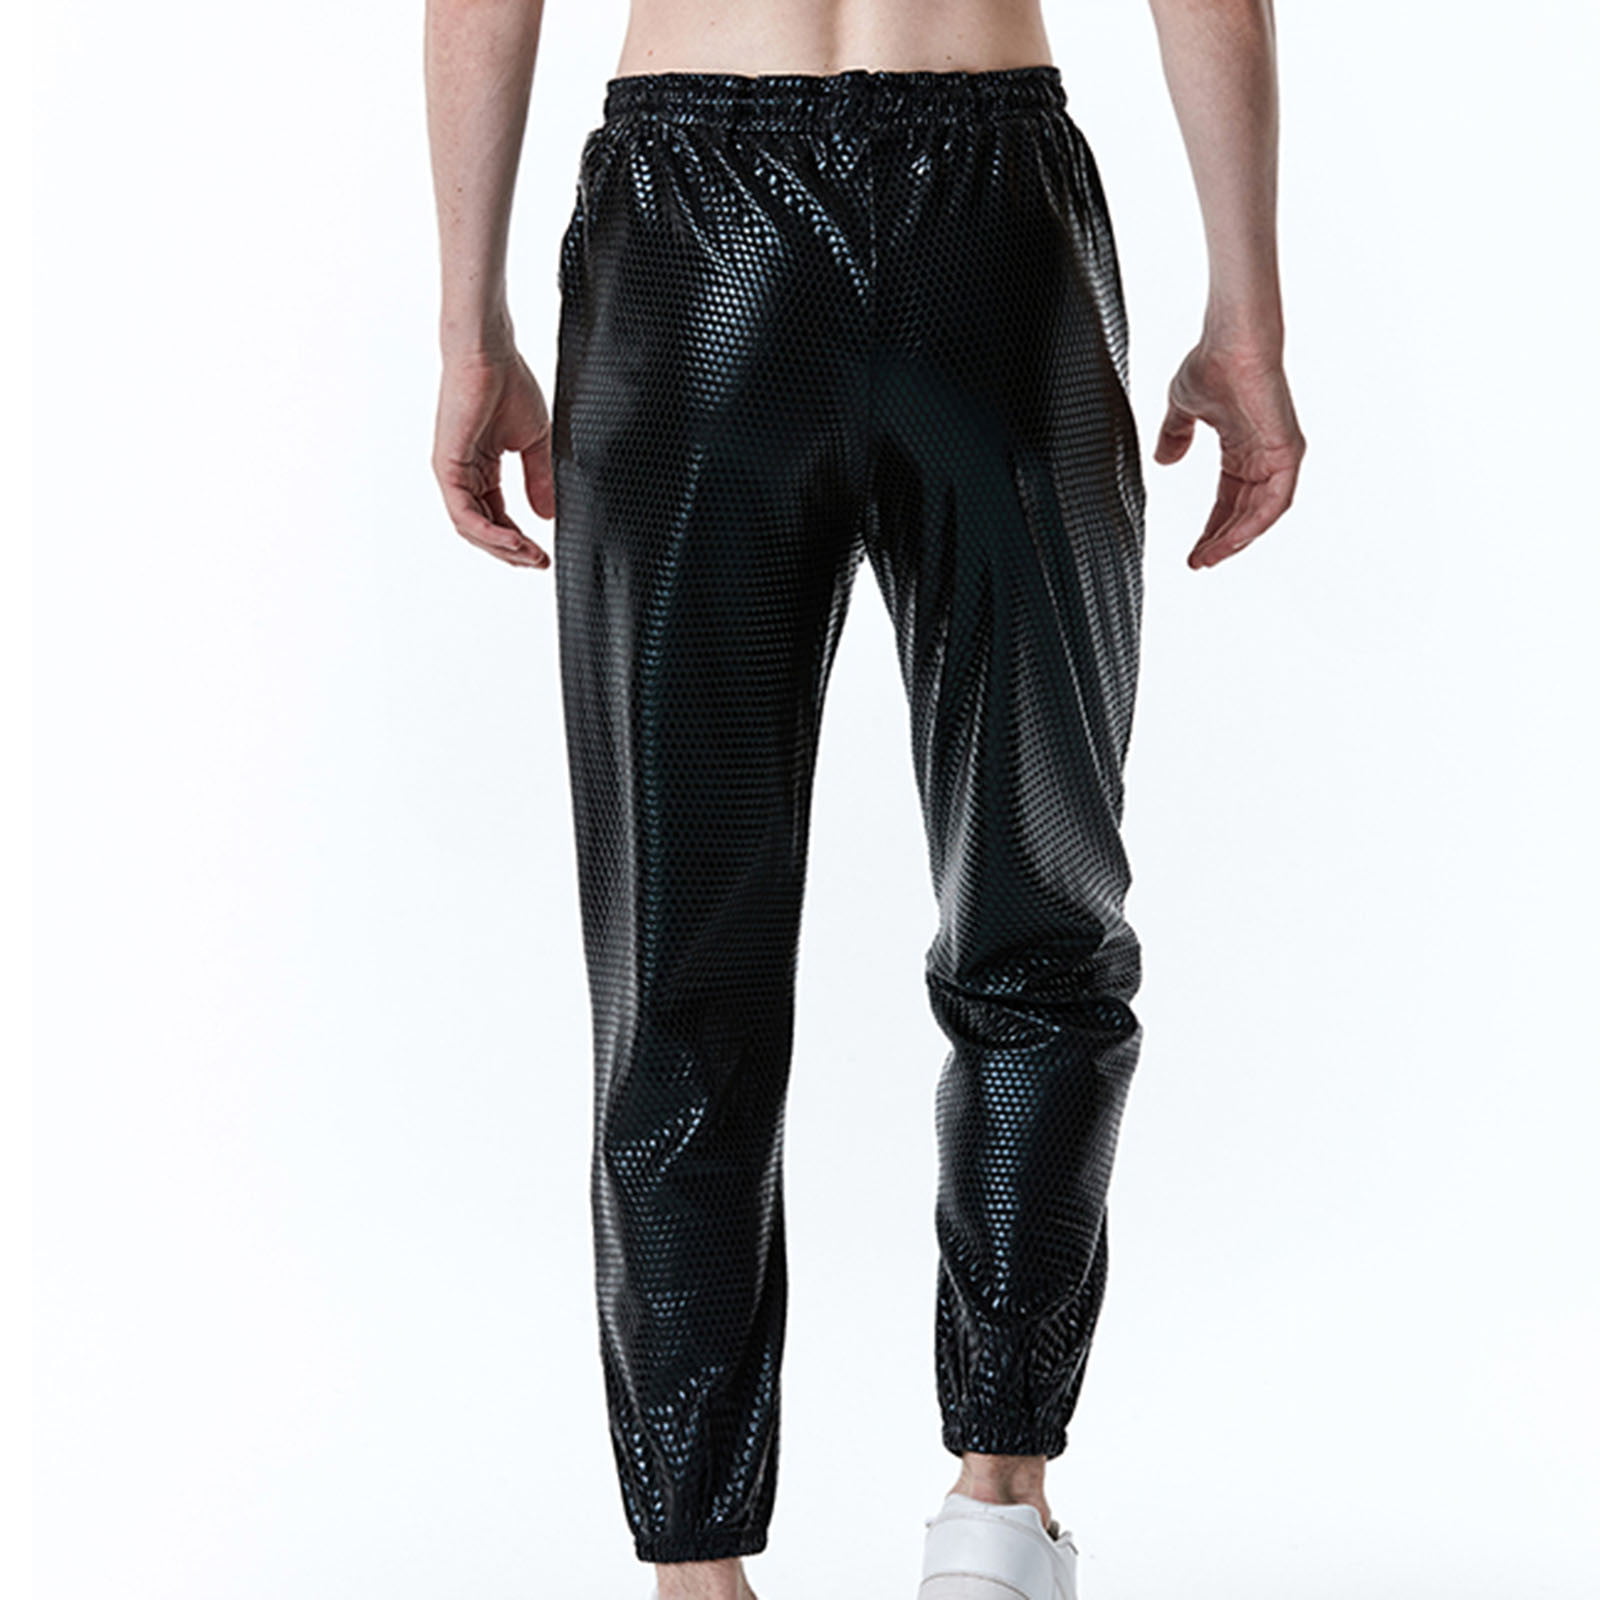 XFLWAM Men's Slim Joggers Workout Pants Elastic Waist Baggy Cinch Bottom  Lounge Pants Comfy Workout Trousers Black M 